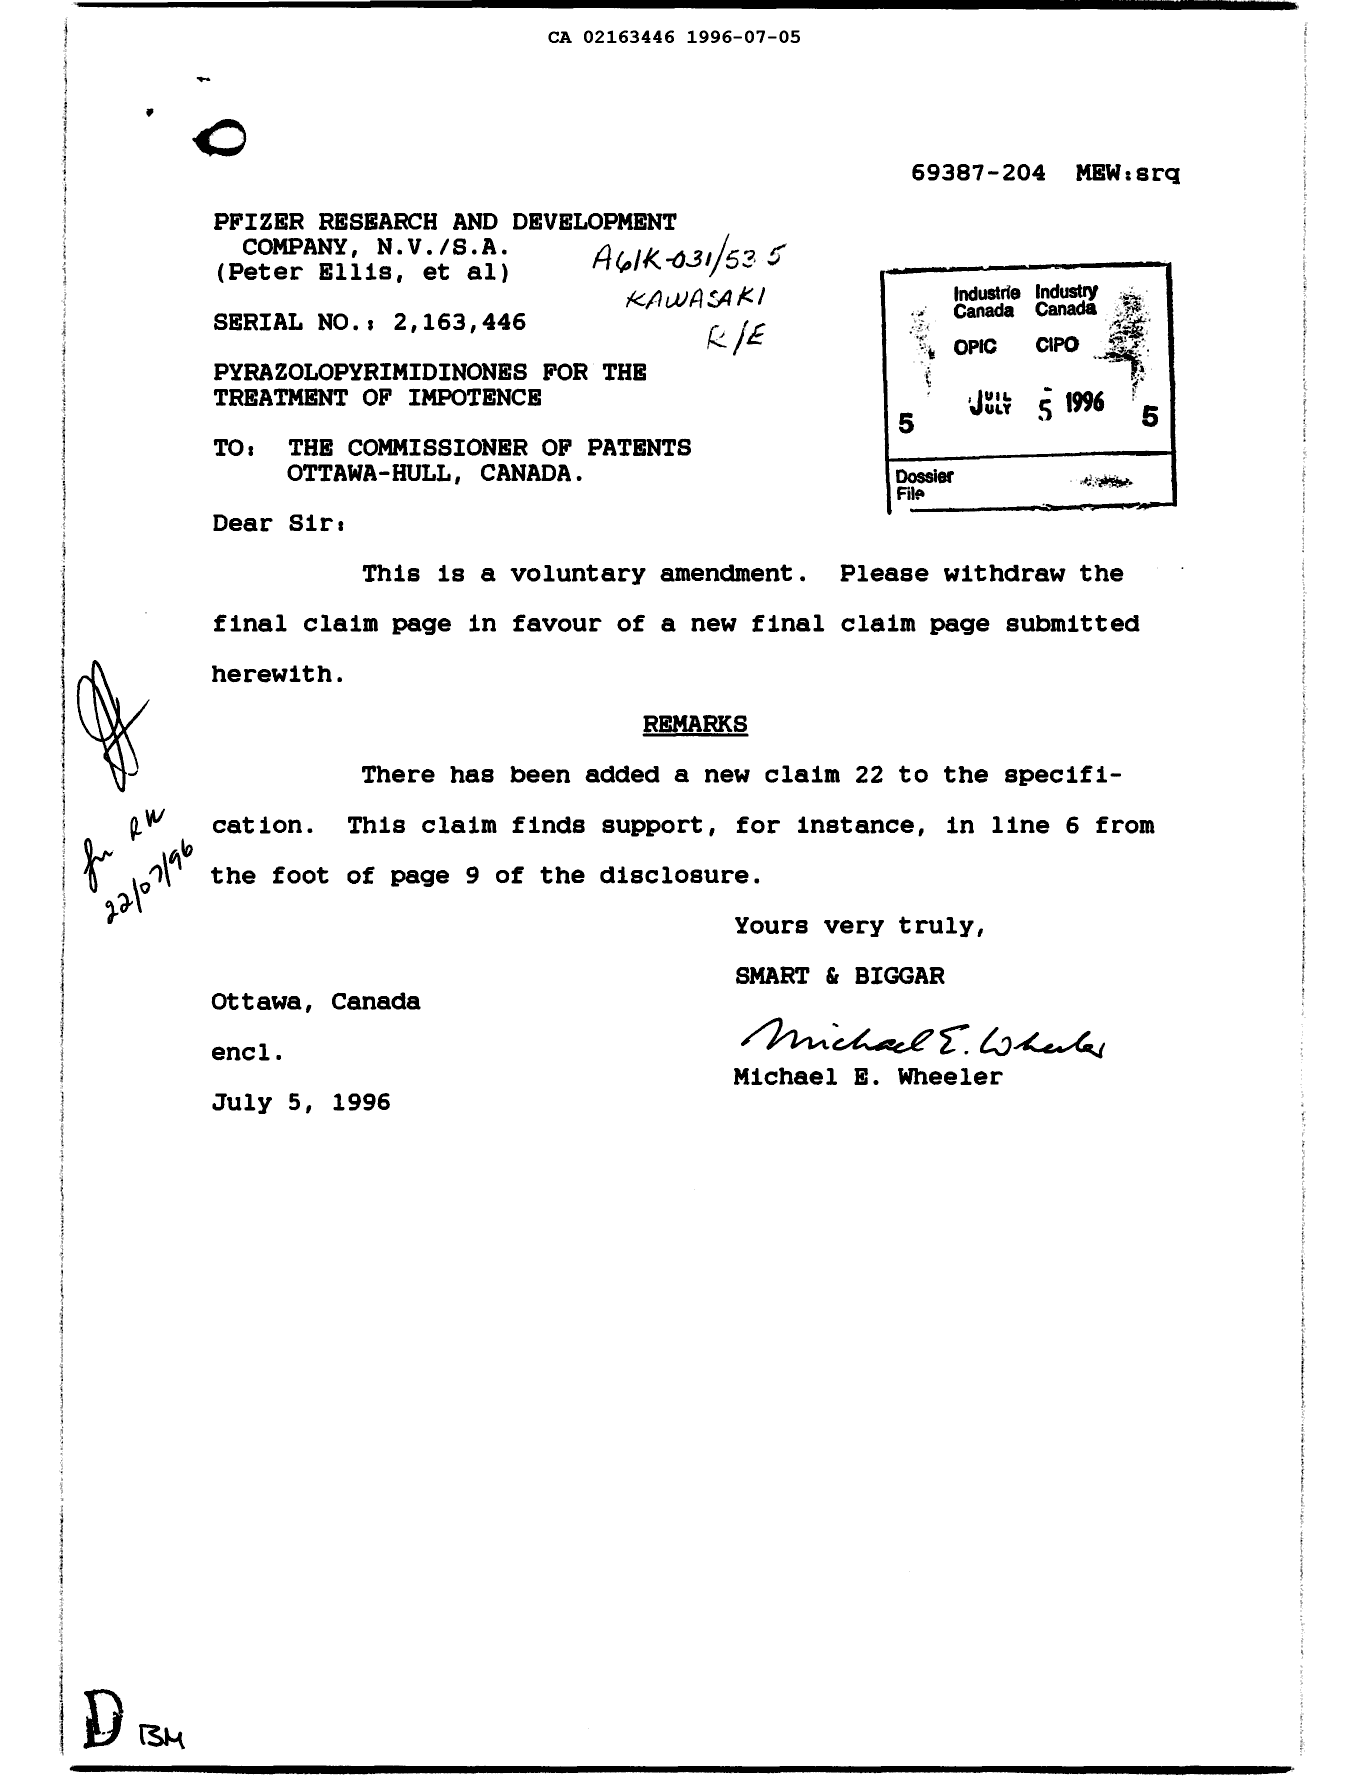 Document de brevet canadien 2163446. Poursuite-Amendment 19951205. Image 1 de 1